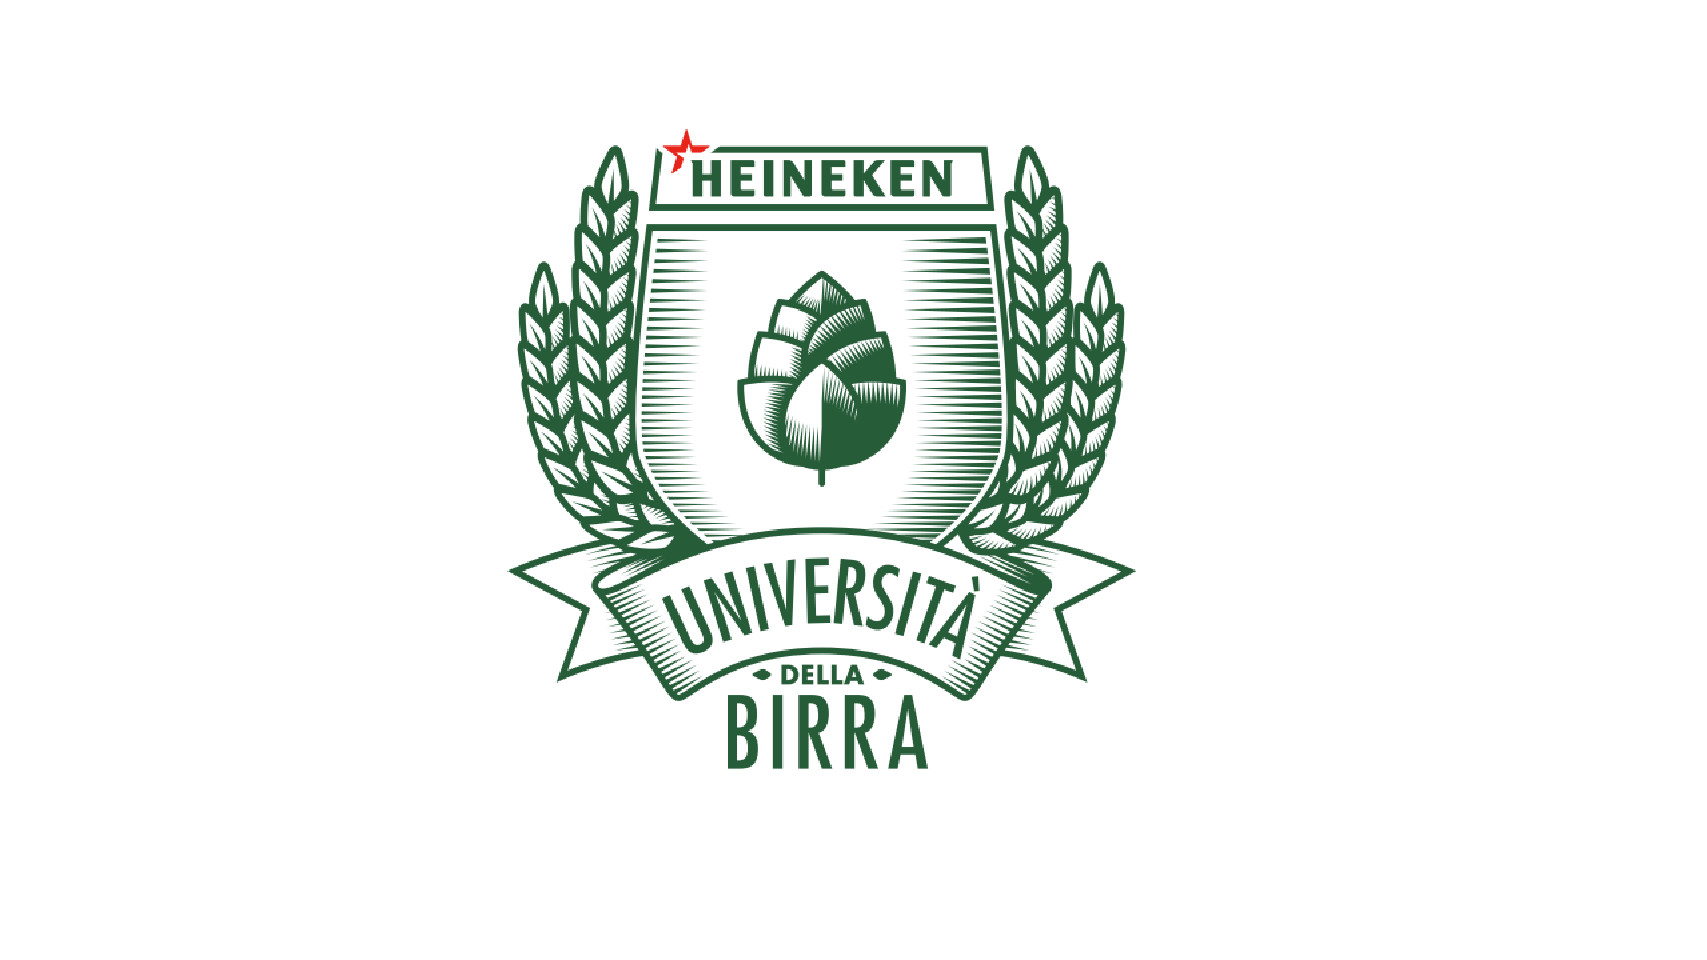 8 maggio a Milano presentazione Università della Birra di Heineken!